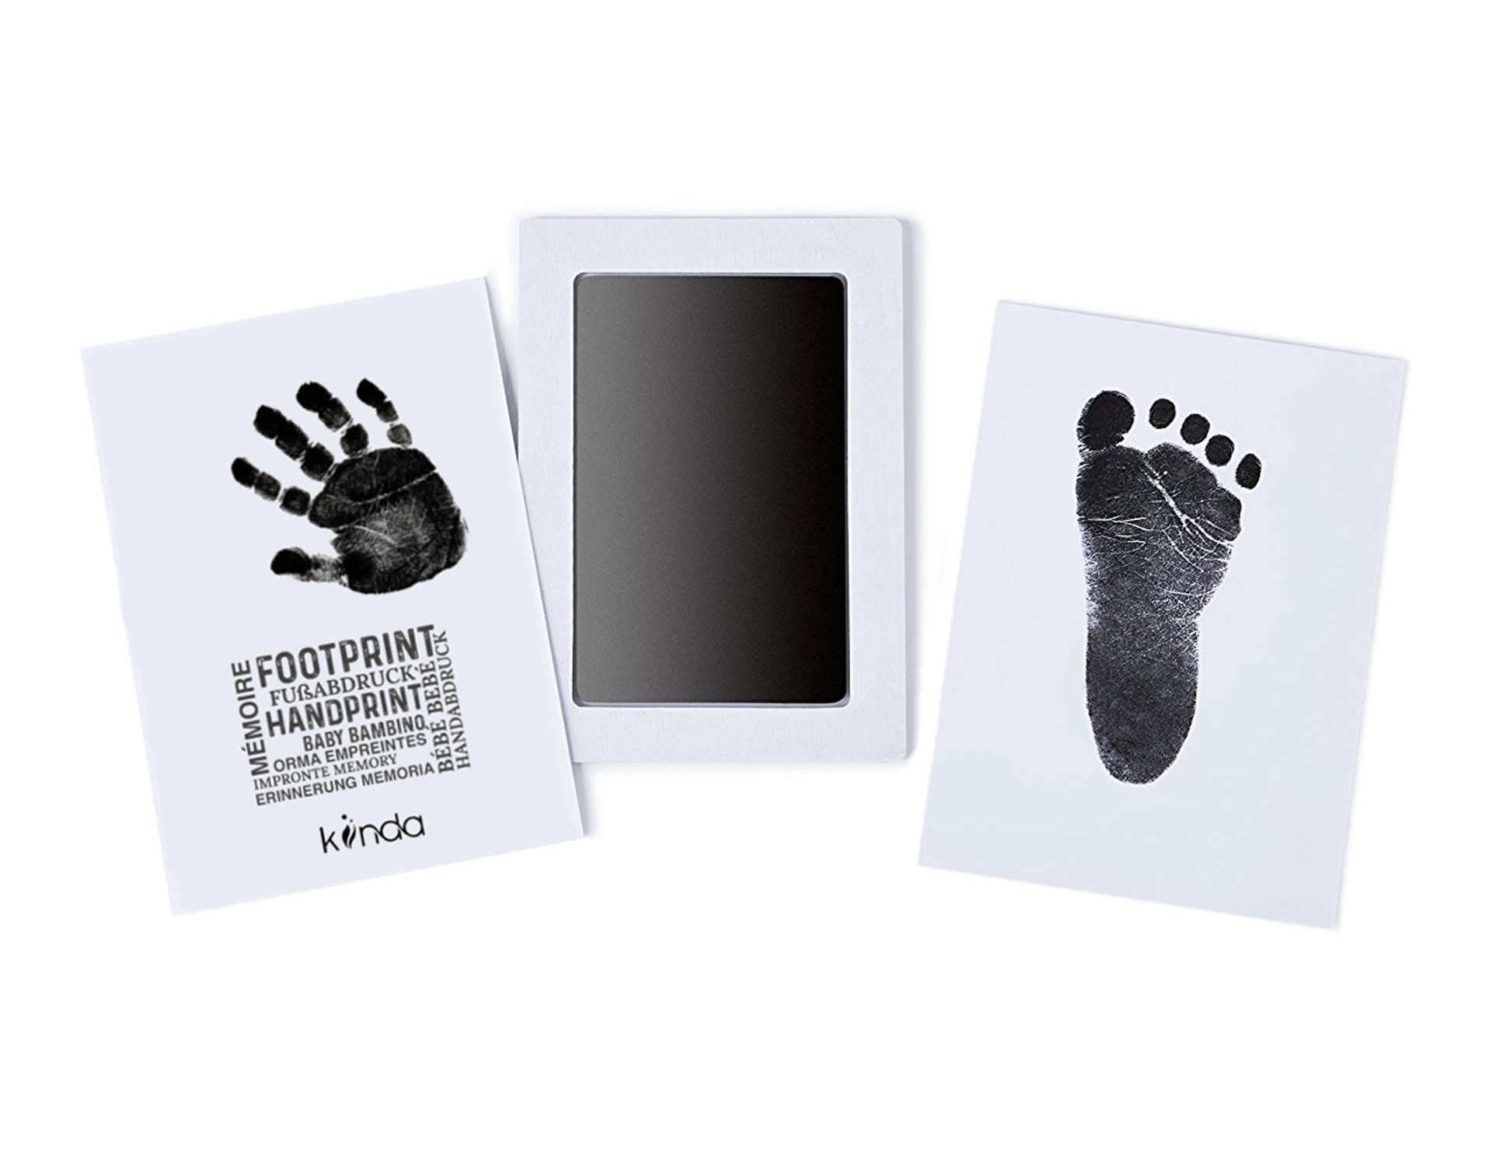 6 Farben Stempelkissen Fingerabdruck Set für   Babyhandabdrücke